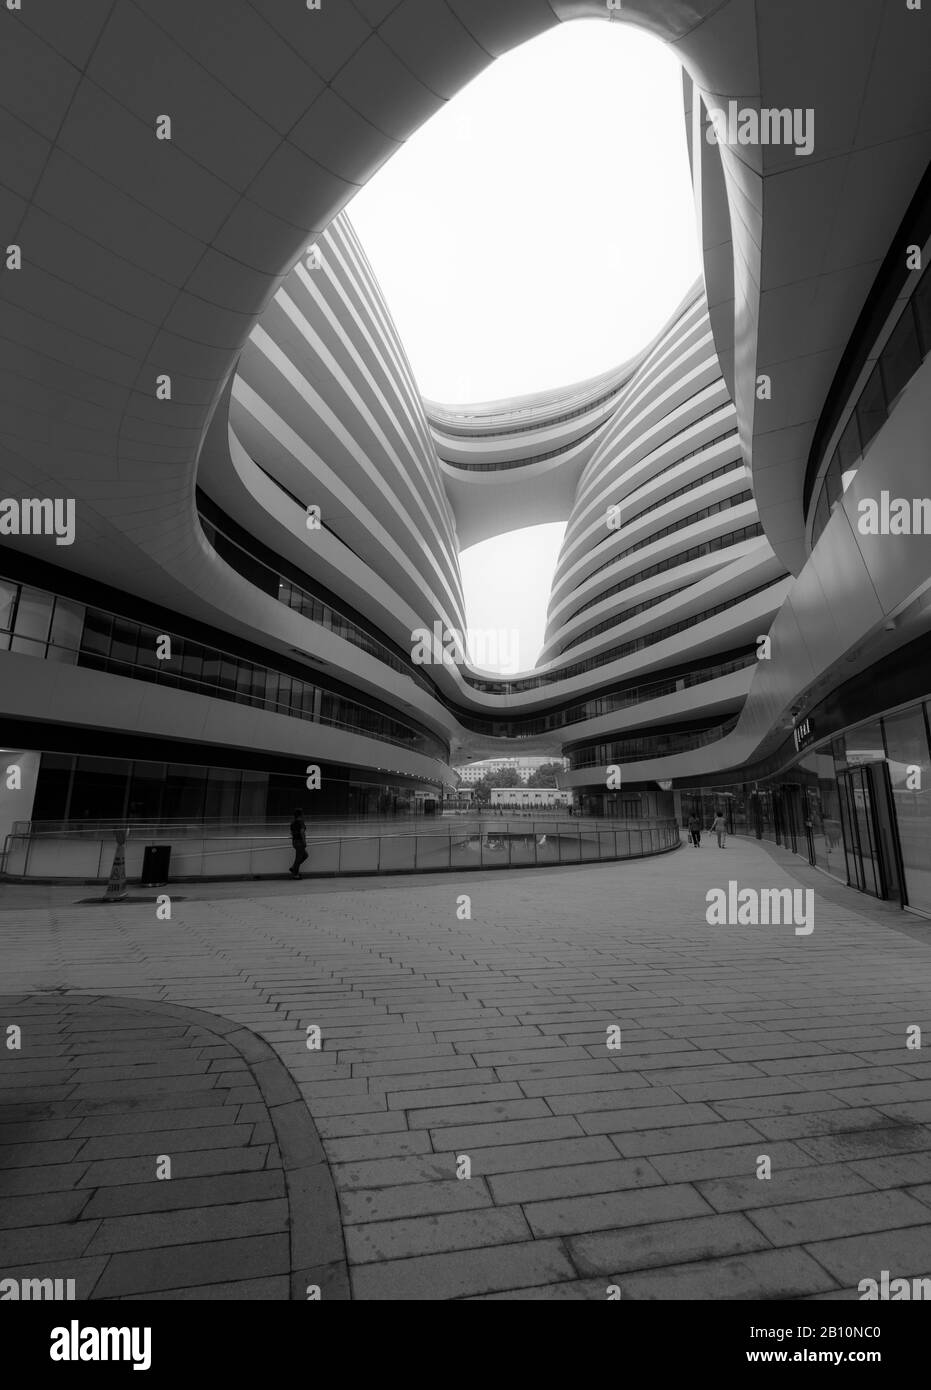 Moderne Architektur in Peking von der englischen Architektin Zaha Hadid, China Stockfoto